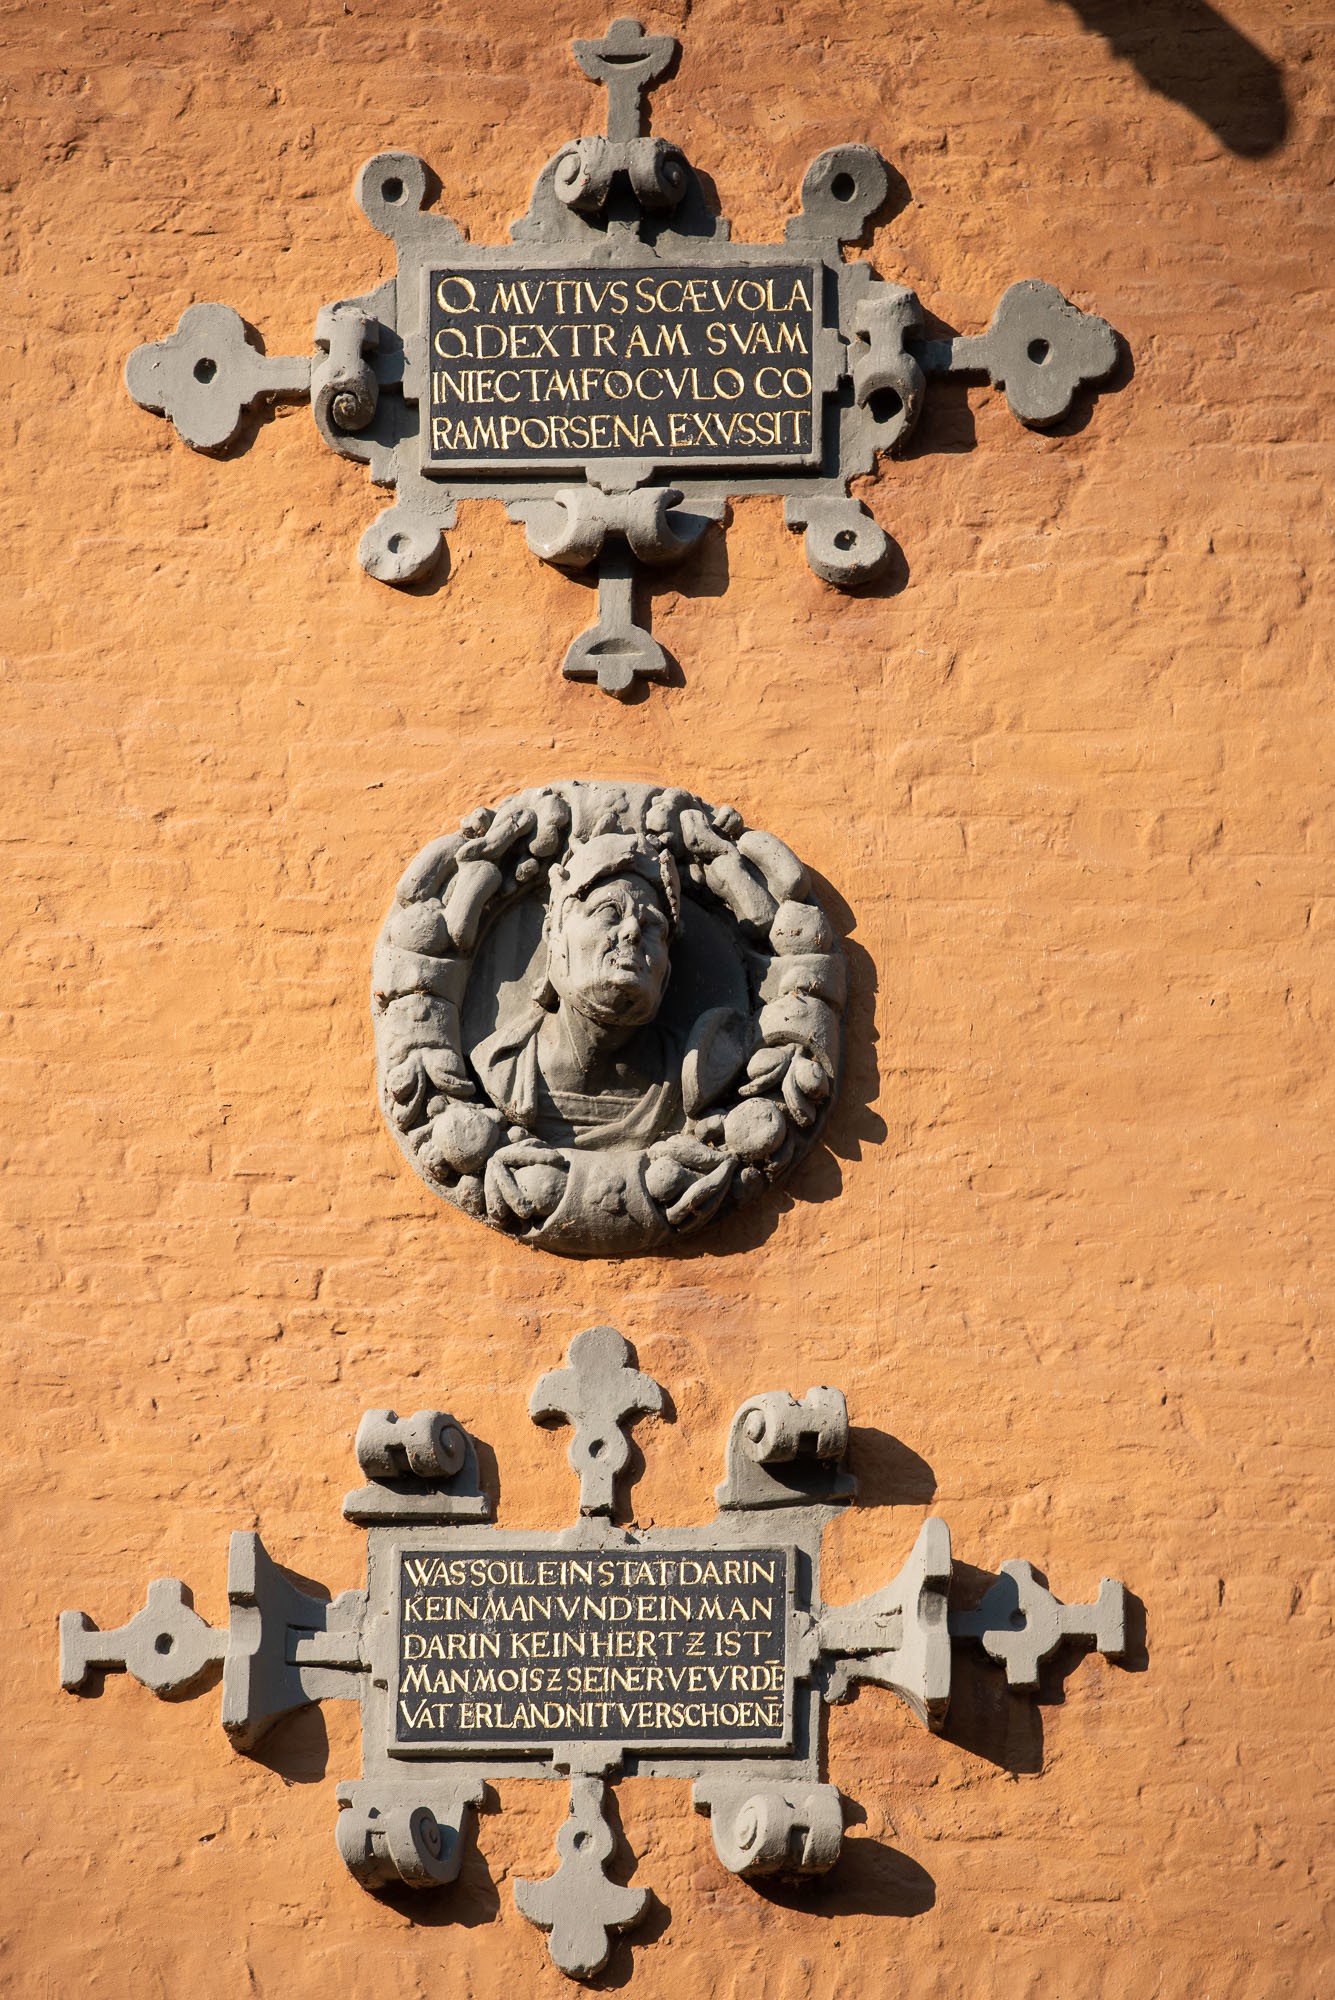 Rheydter Tondo mit Gaius Mutius Scaevola, 16. Jahrhundert (Städtisches Museum Schloss Rheydt CC BY)